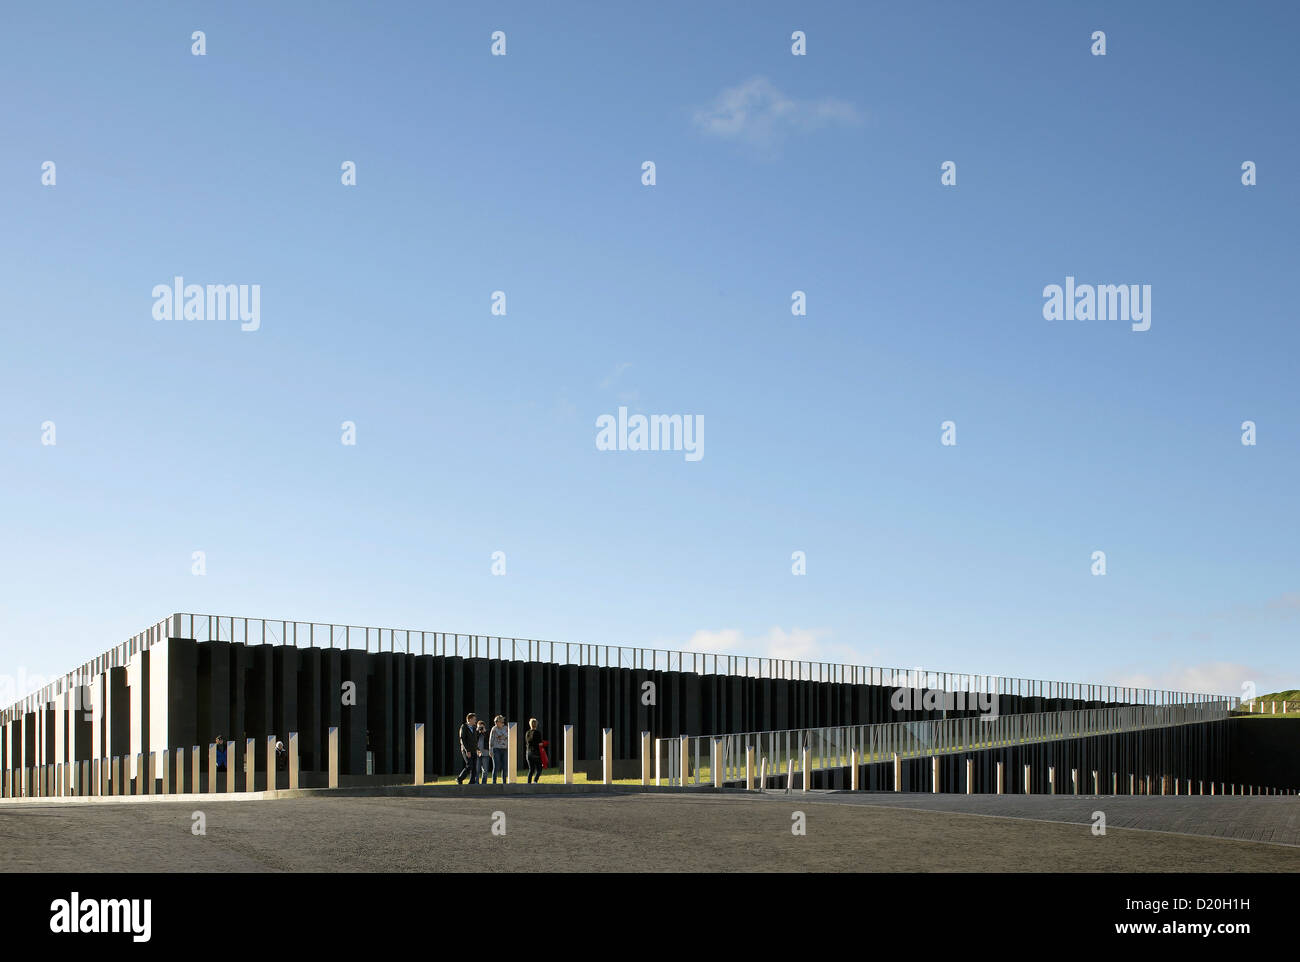 Giant's Causeway Visitor Centre, Bushmills, Royaume-Uni. Architecte : heneghan peng architectes, 2012. Mur en pente avec Meneaux Banque D'Images